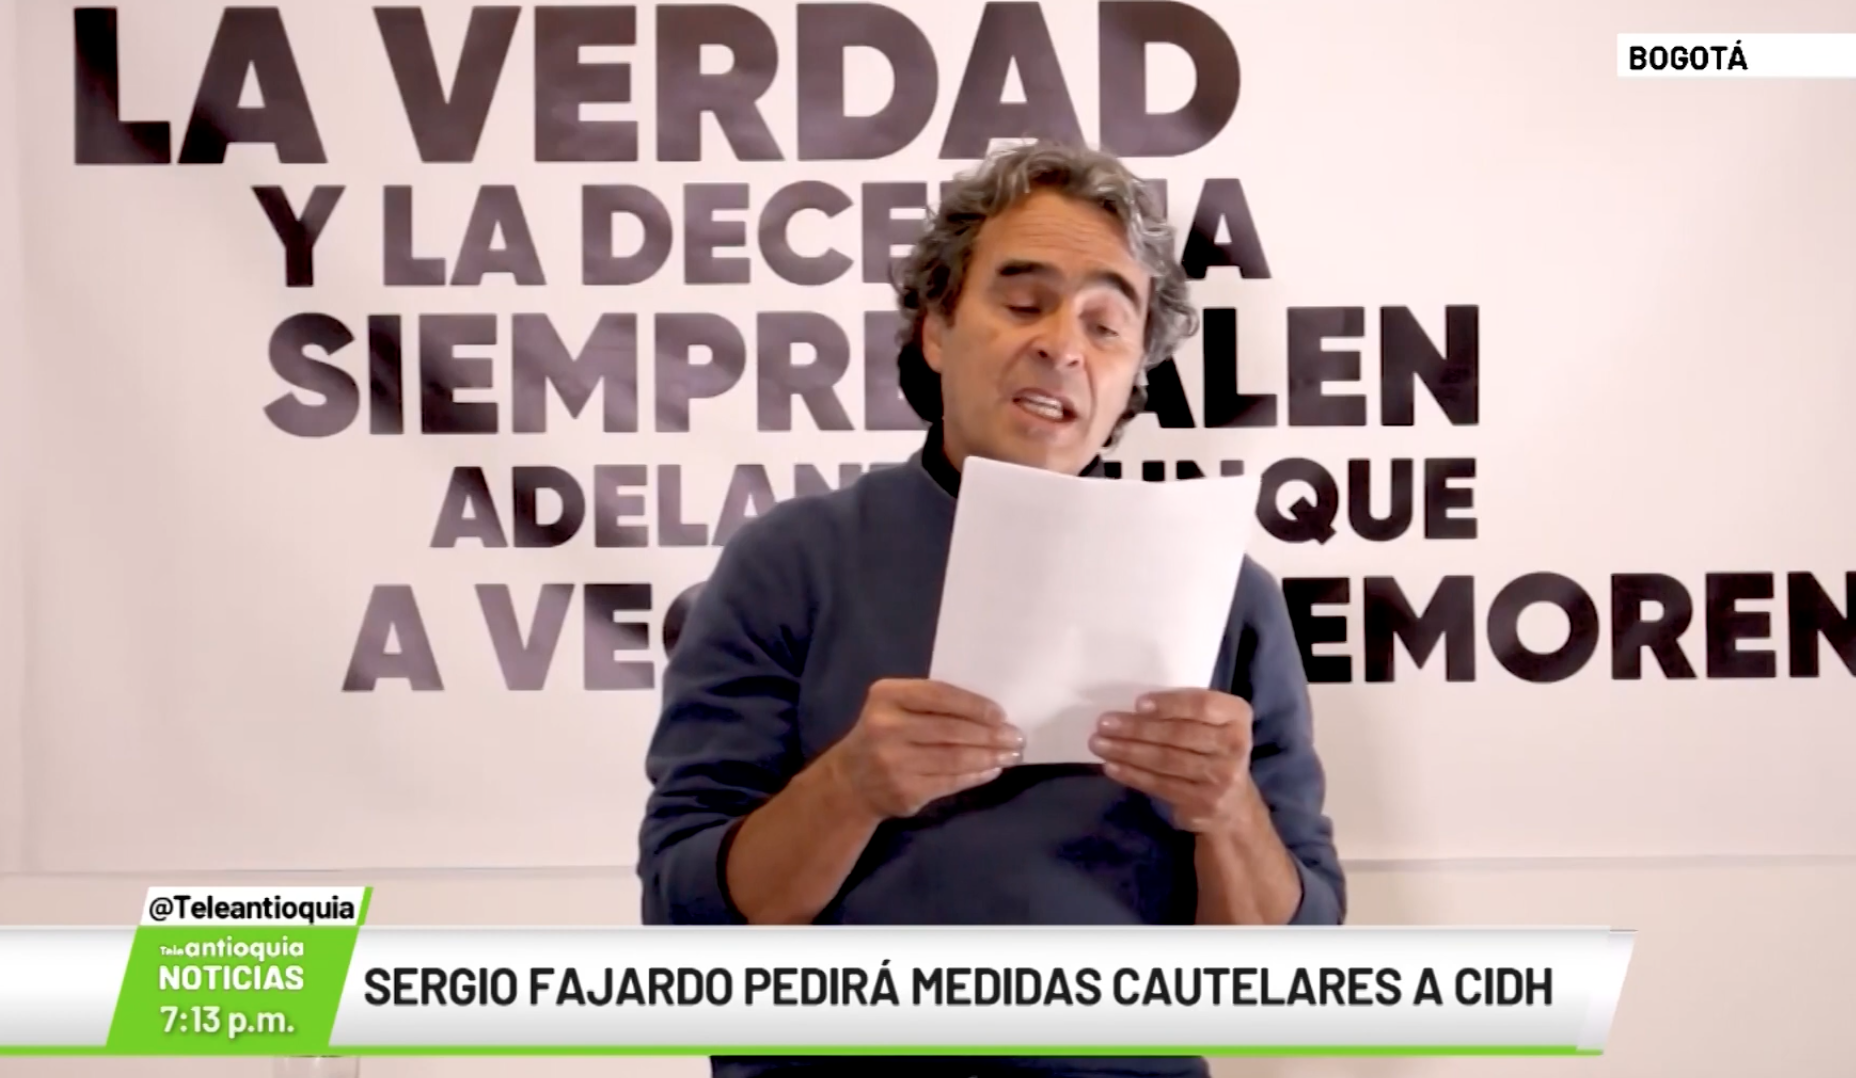 Sergio Fajardo pedirá medidas cautelares a CIDH